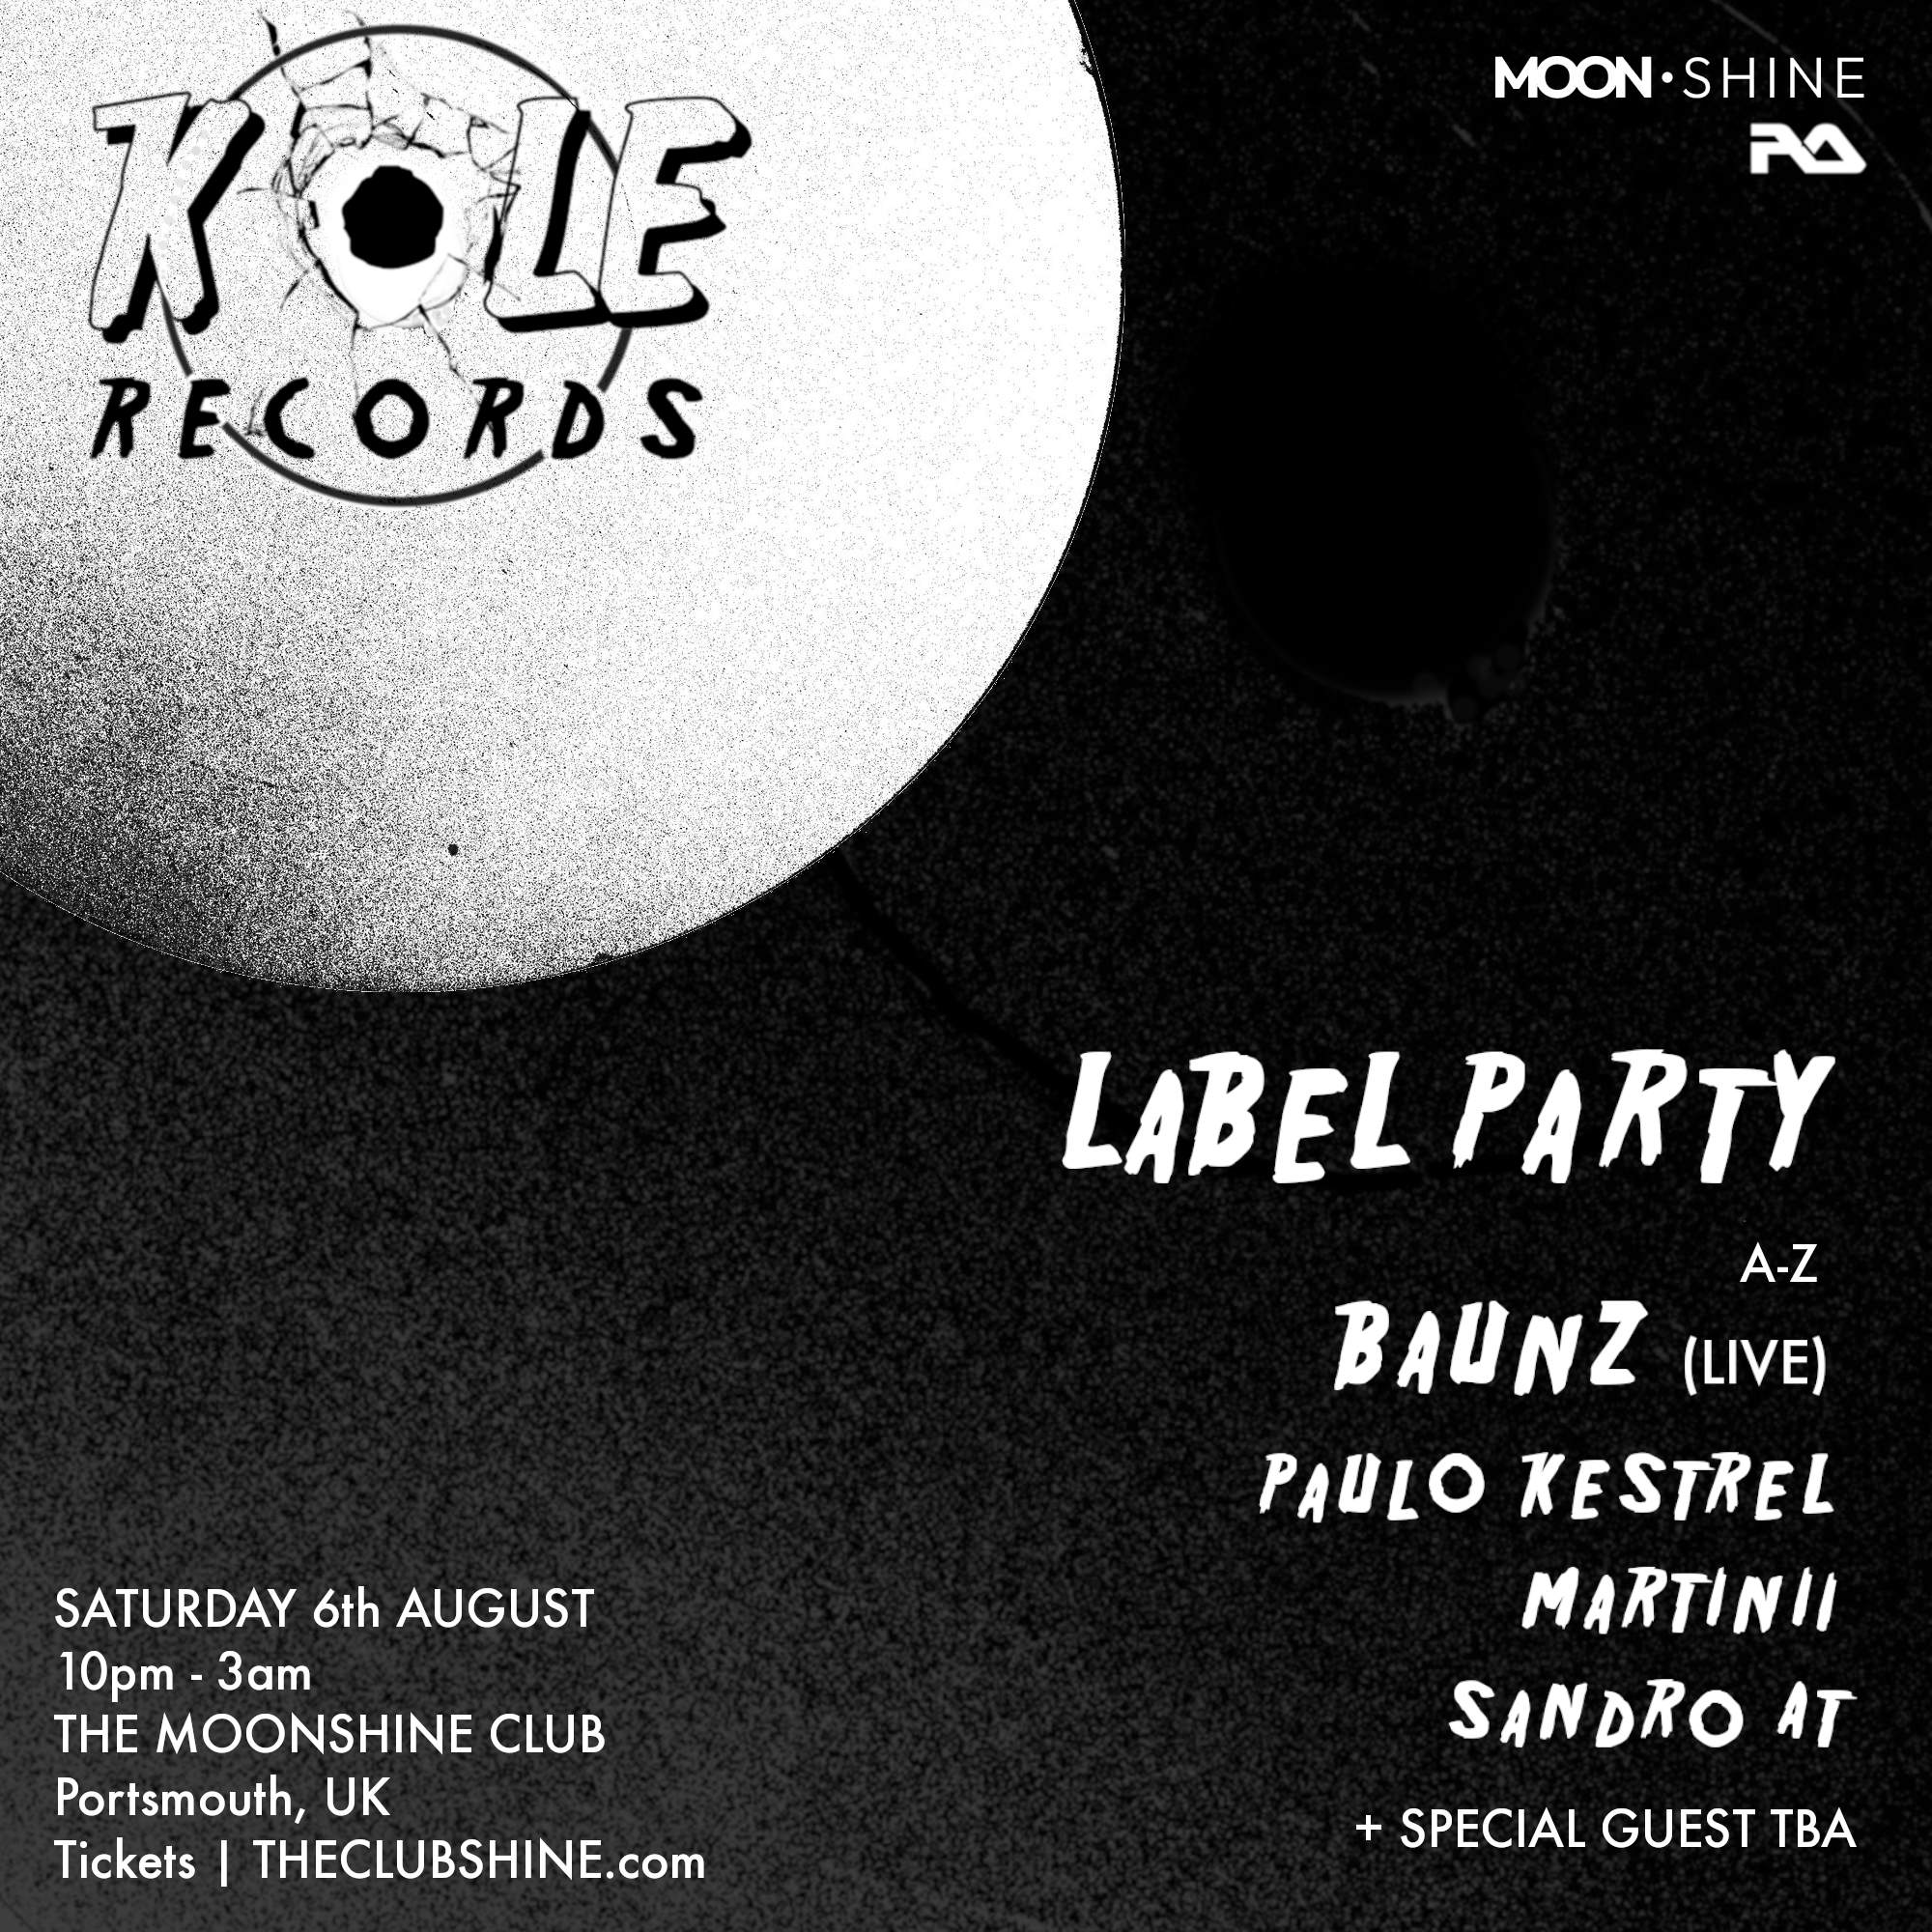 KOLE Records Label Party: Baunz, Paulo Kestrel + Special Guests - フライヤー表